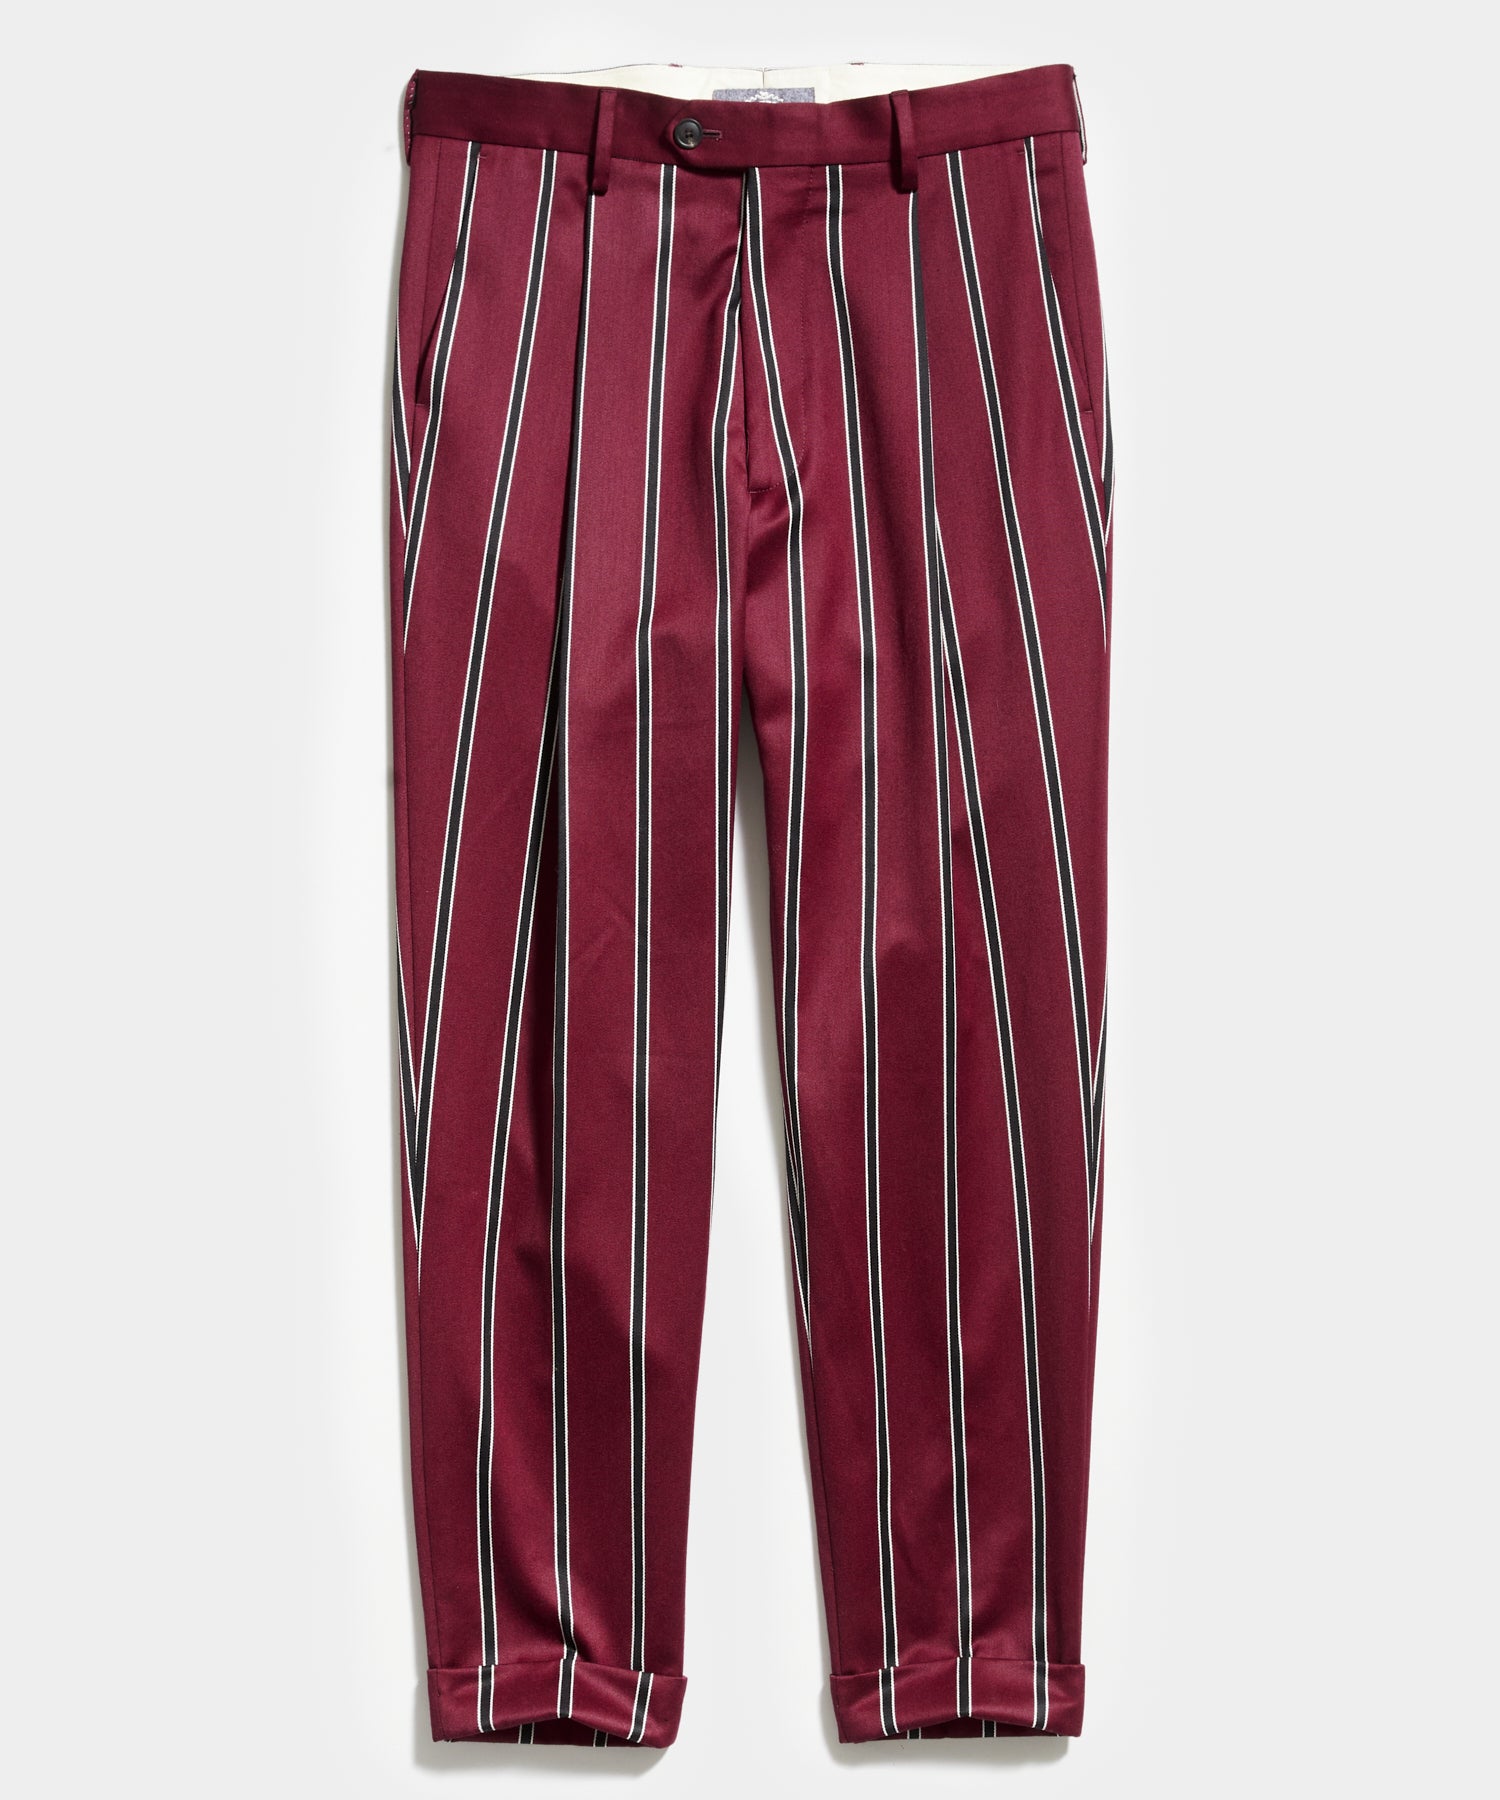 J.Press Snyder Stripe Burgundy Suit Trouser